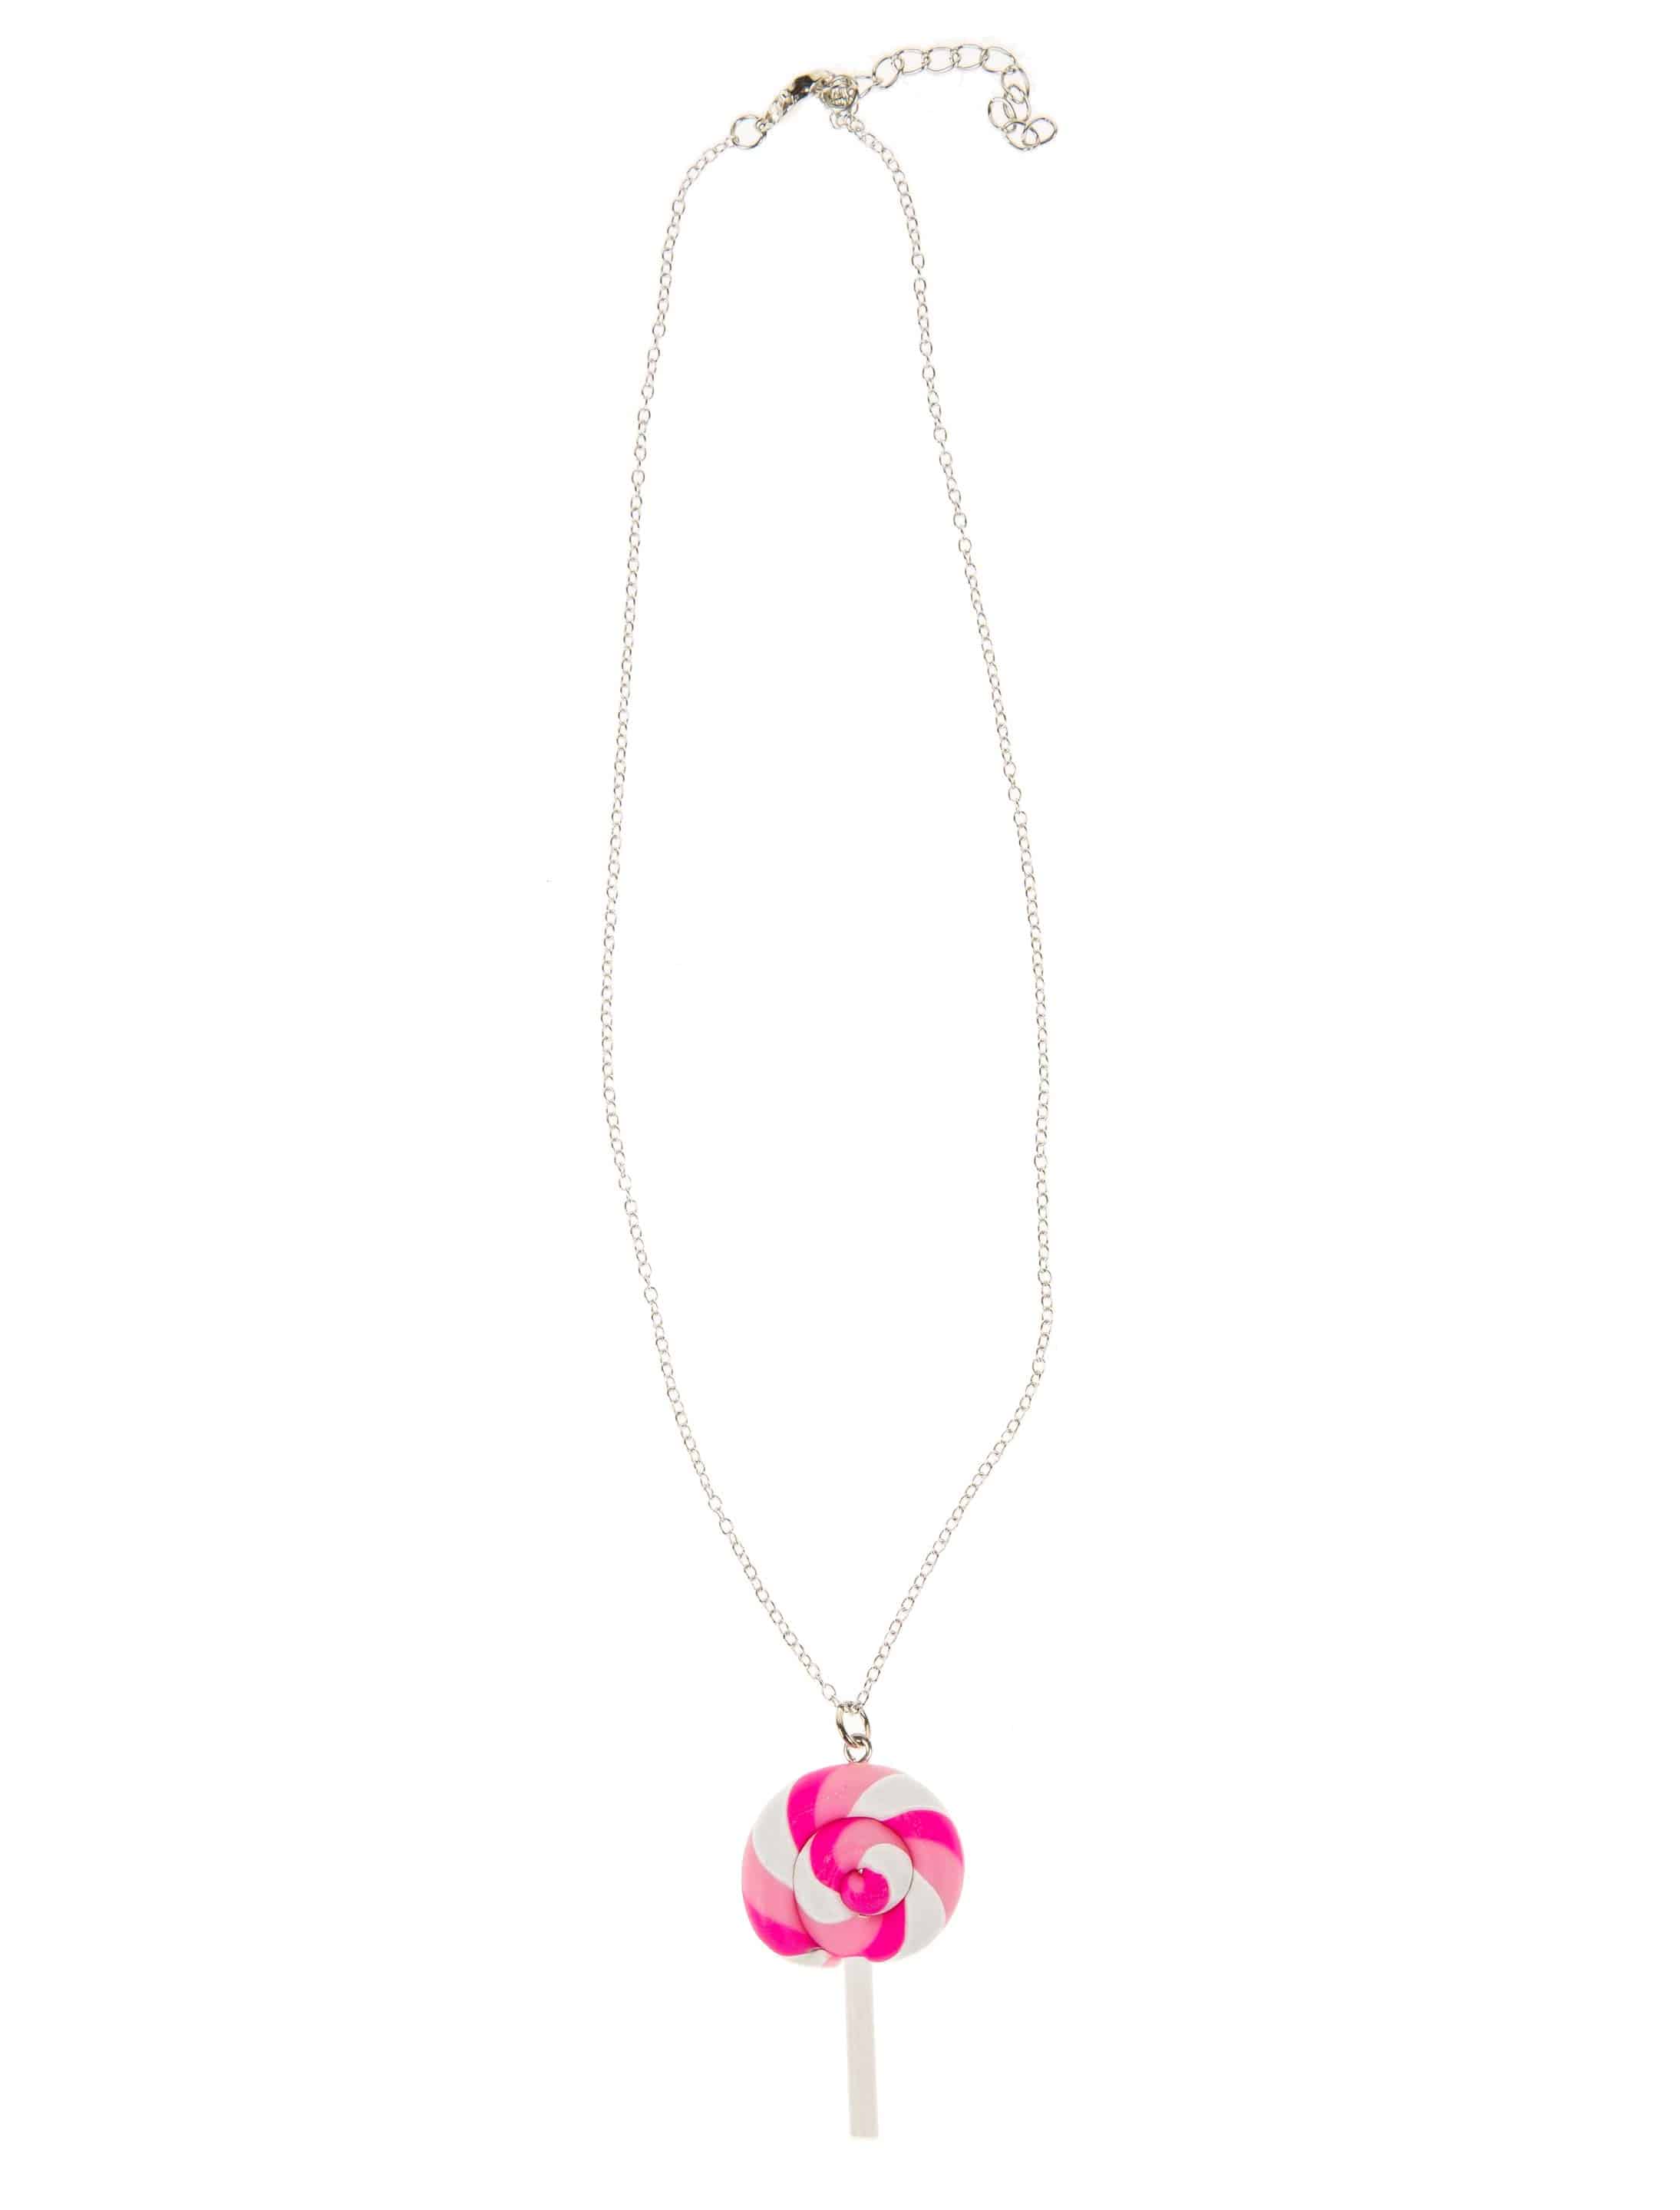 Halskette Candy Lolli pink/weiß